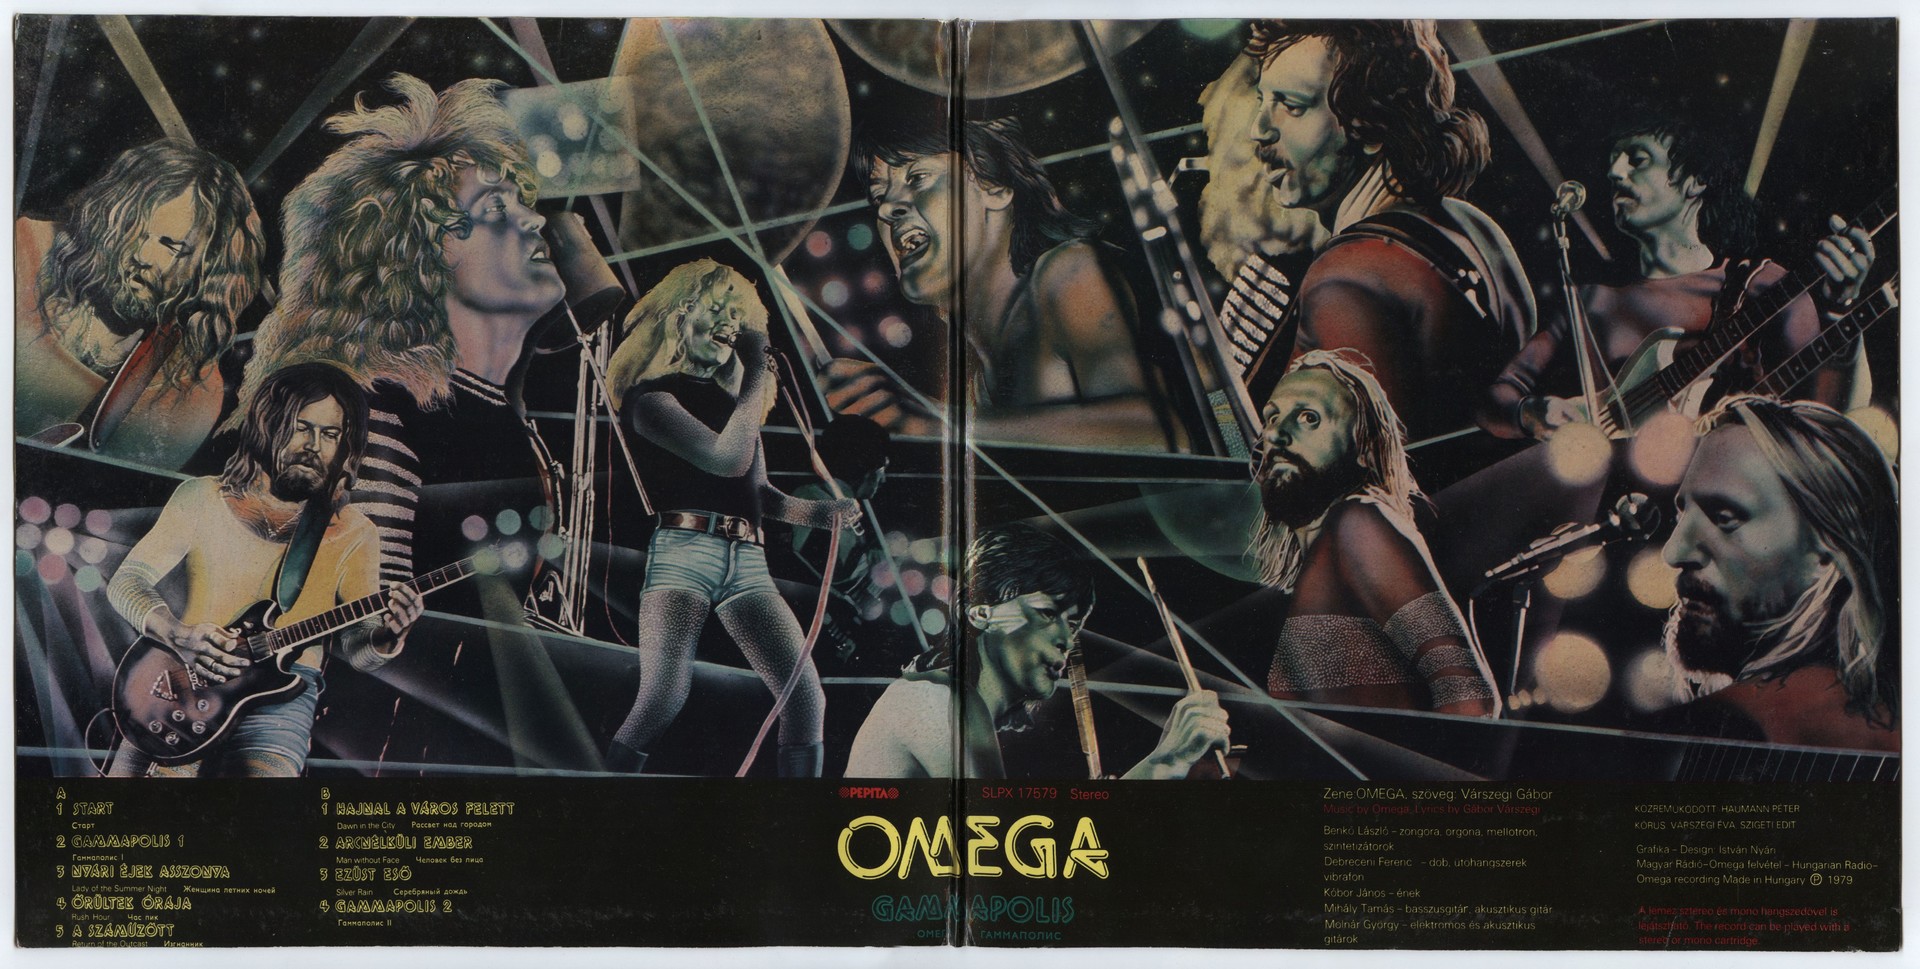 Omega 1979 Gammapolis LP inner.jpg